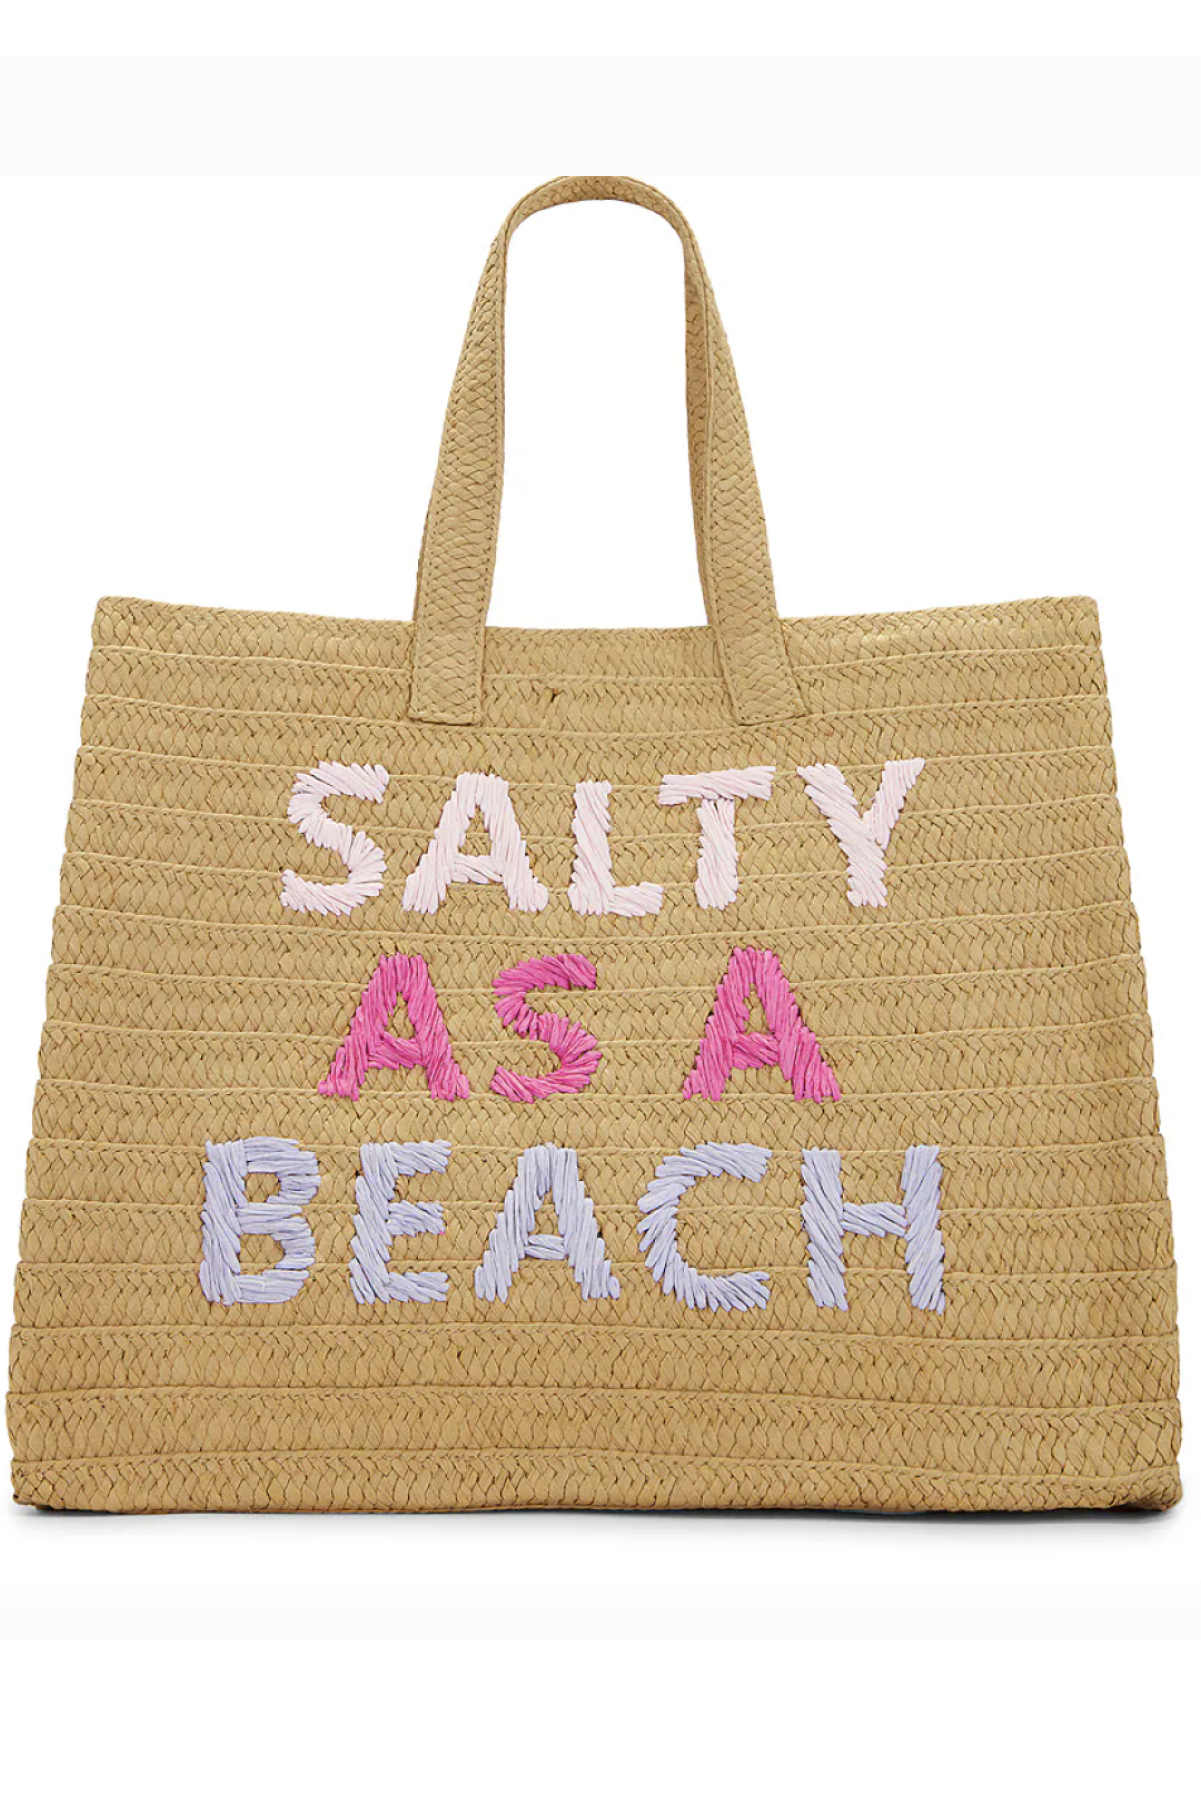 Salty as a Beach Tote